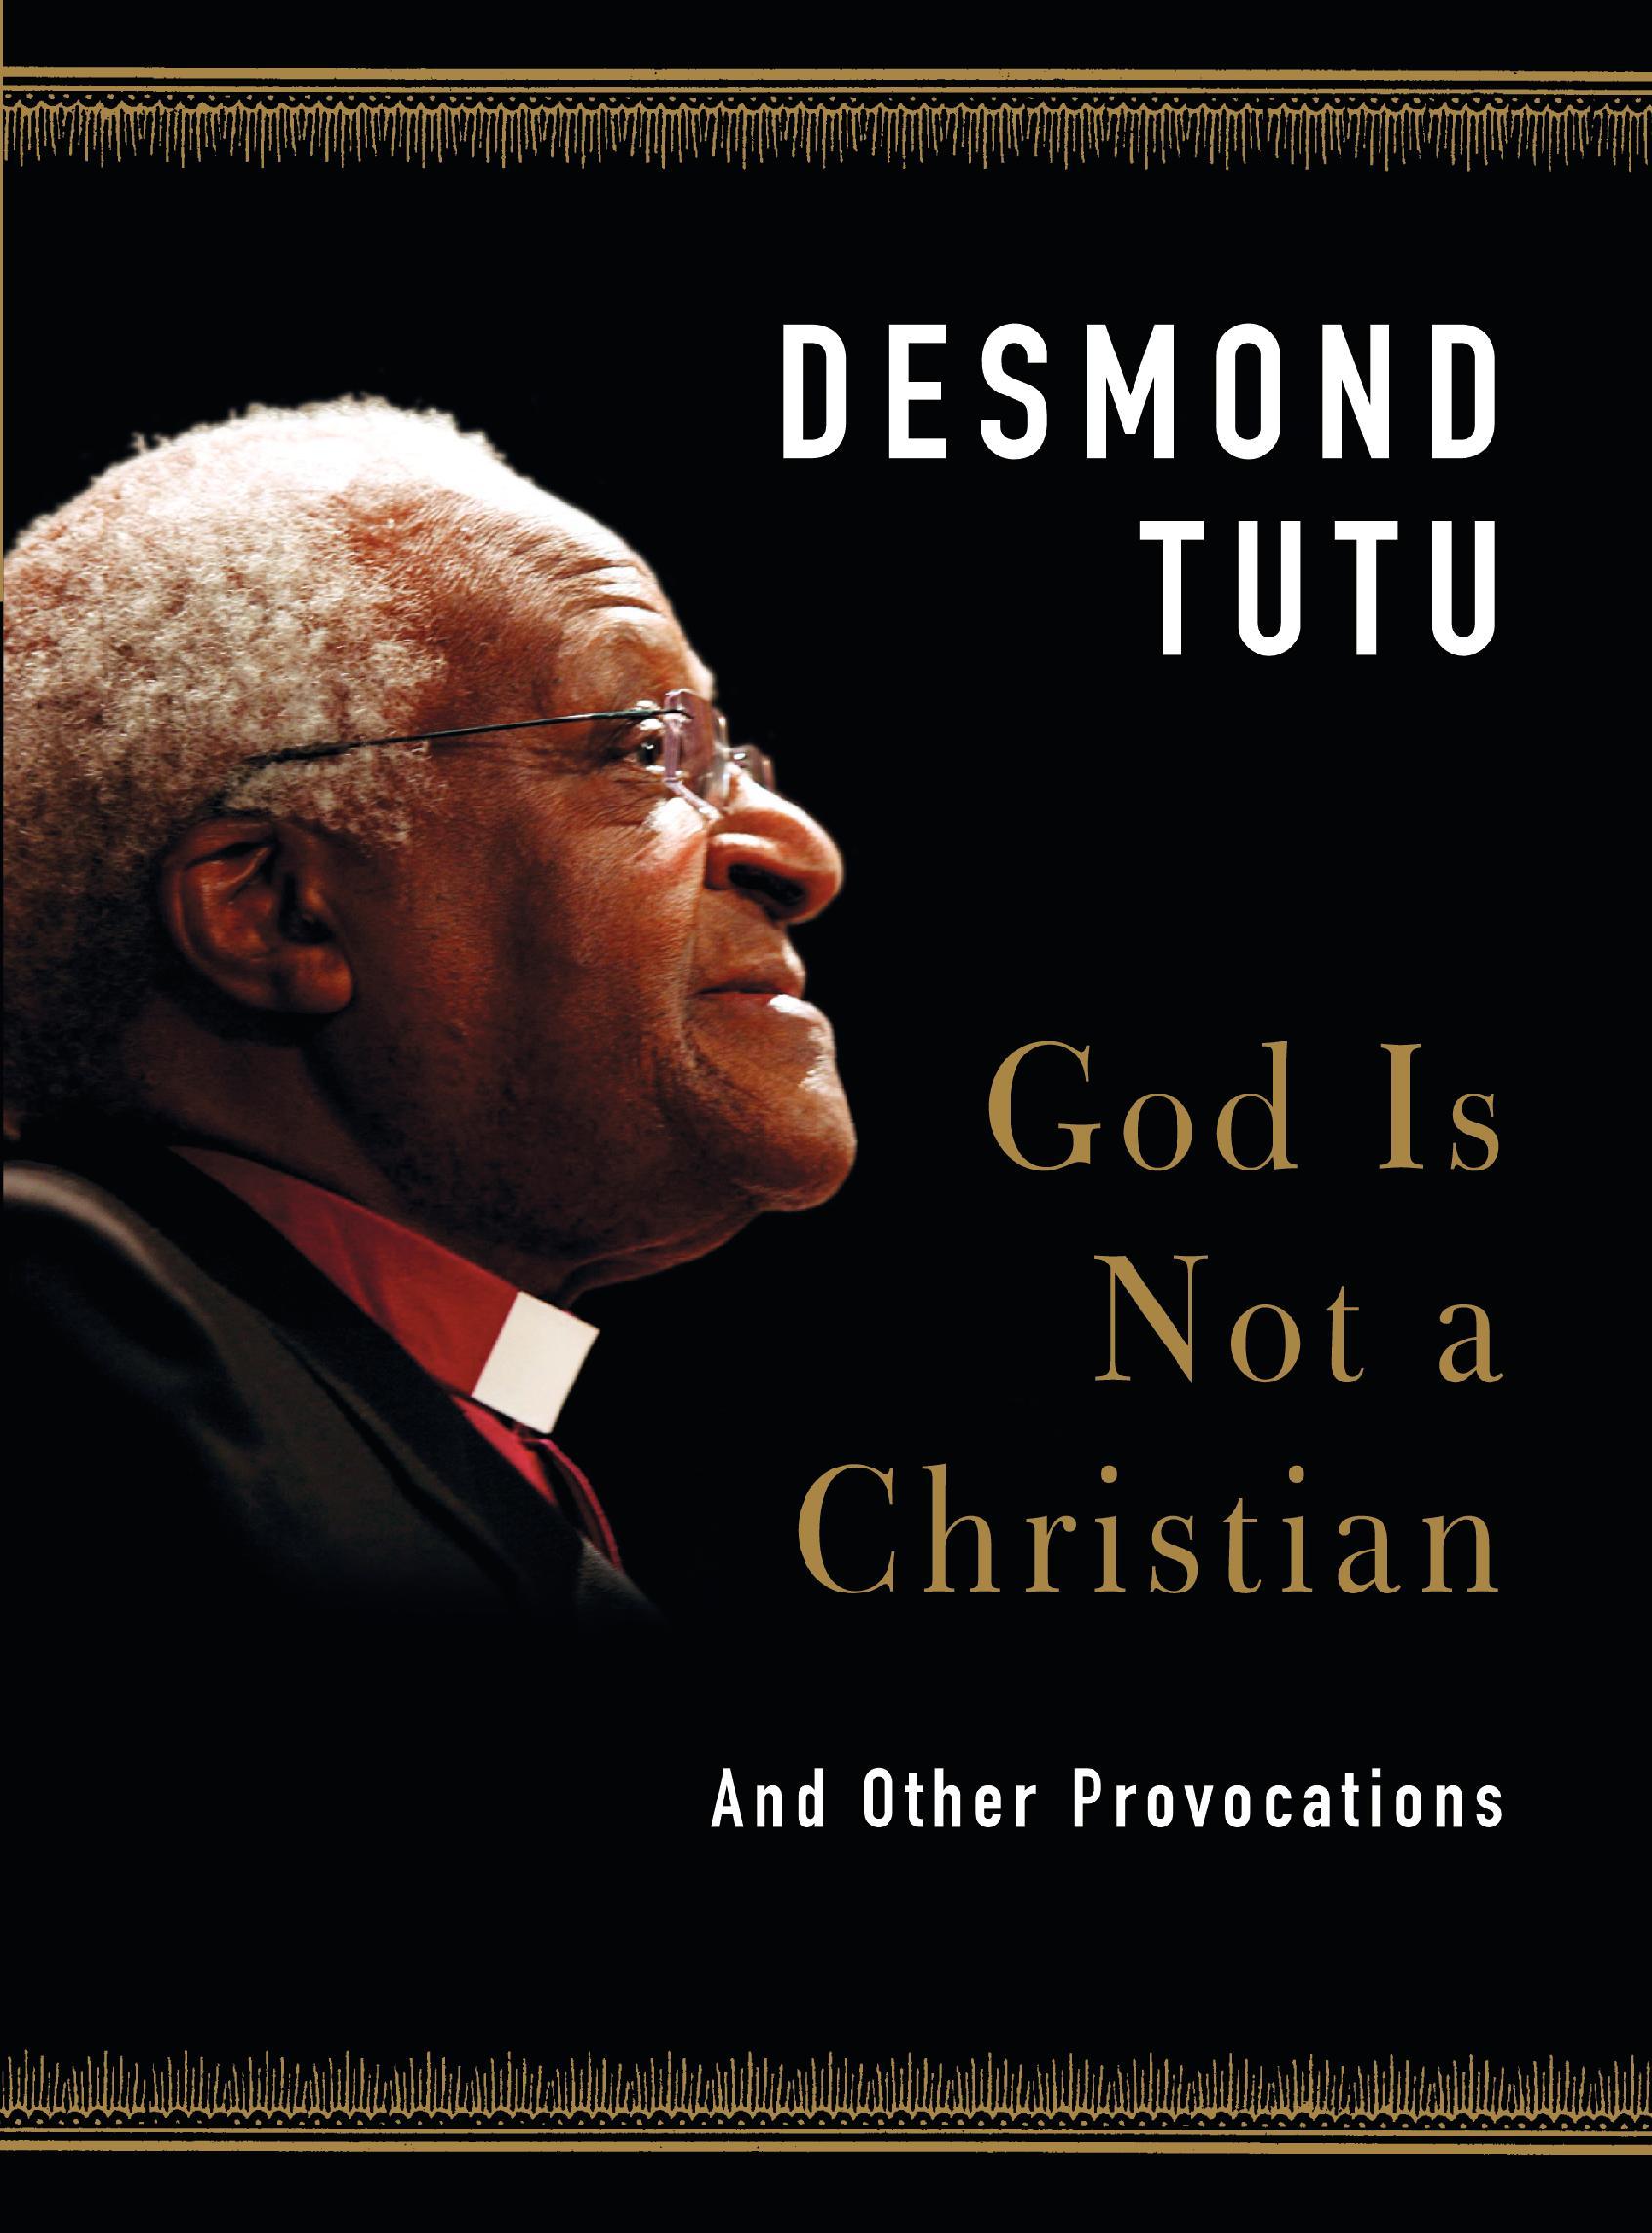 Desmond Tutu Quotes. QuotesGram